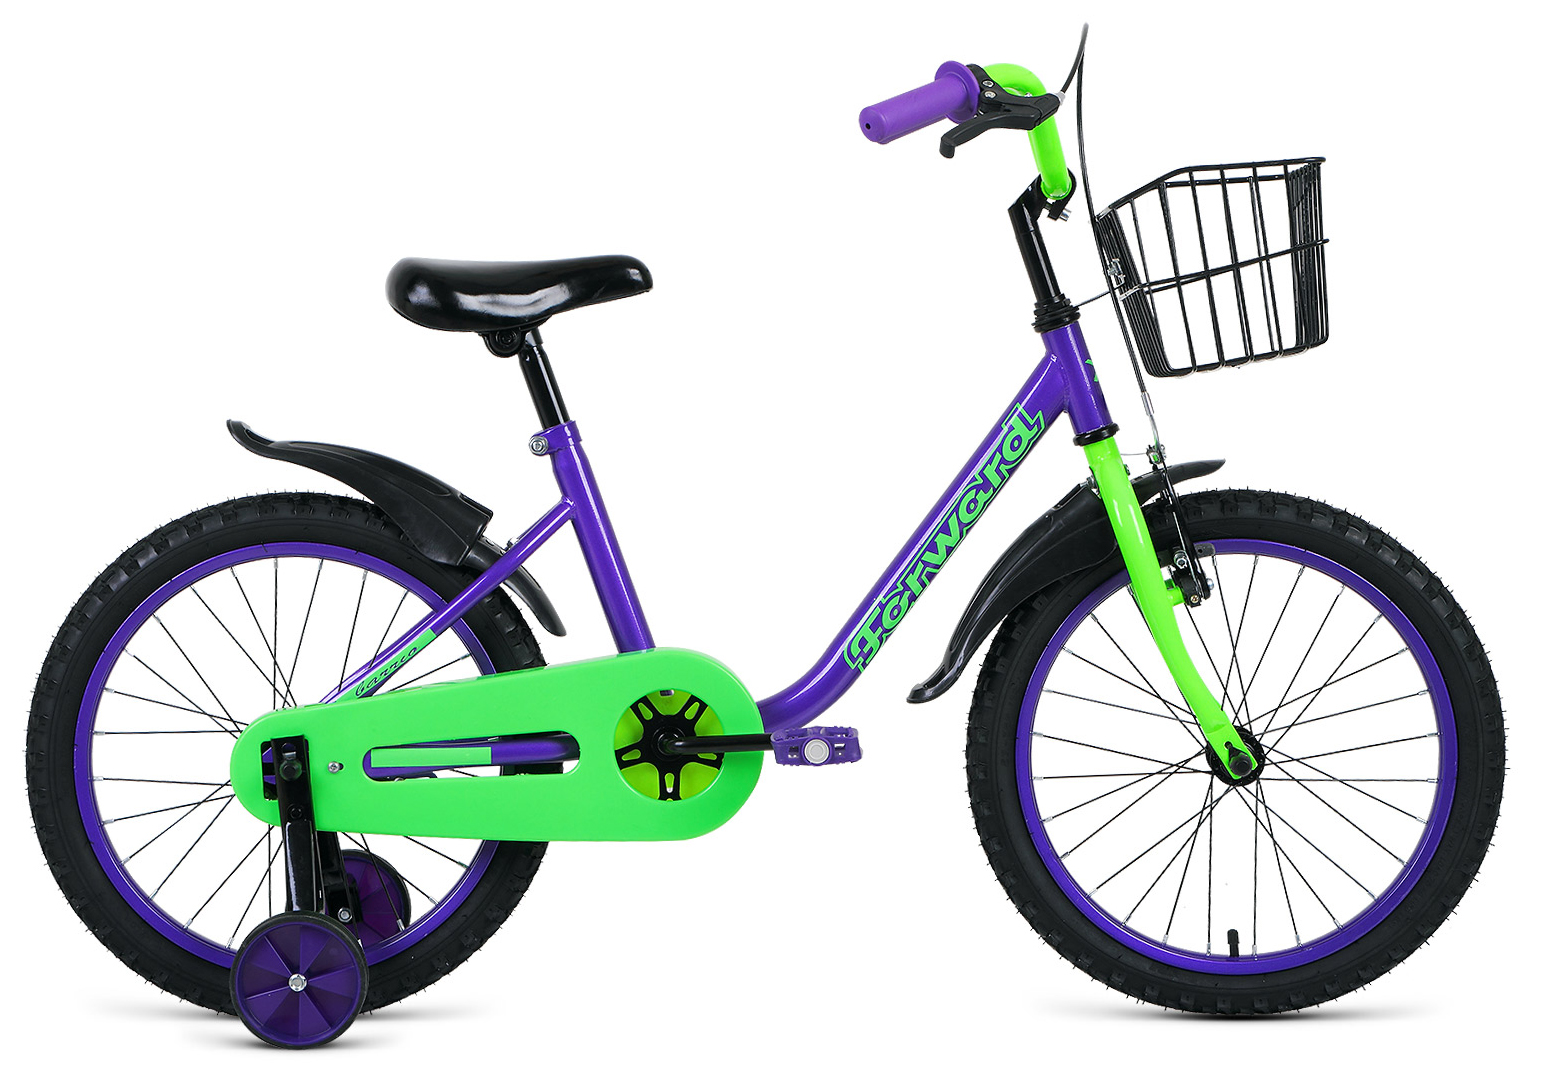  Отзывы о Детском велосипеде Forward Barrio 18 2020